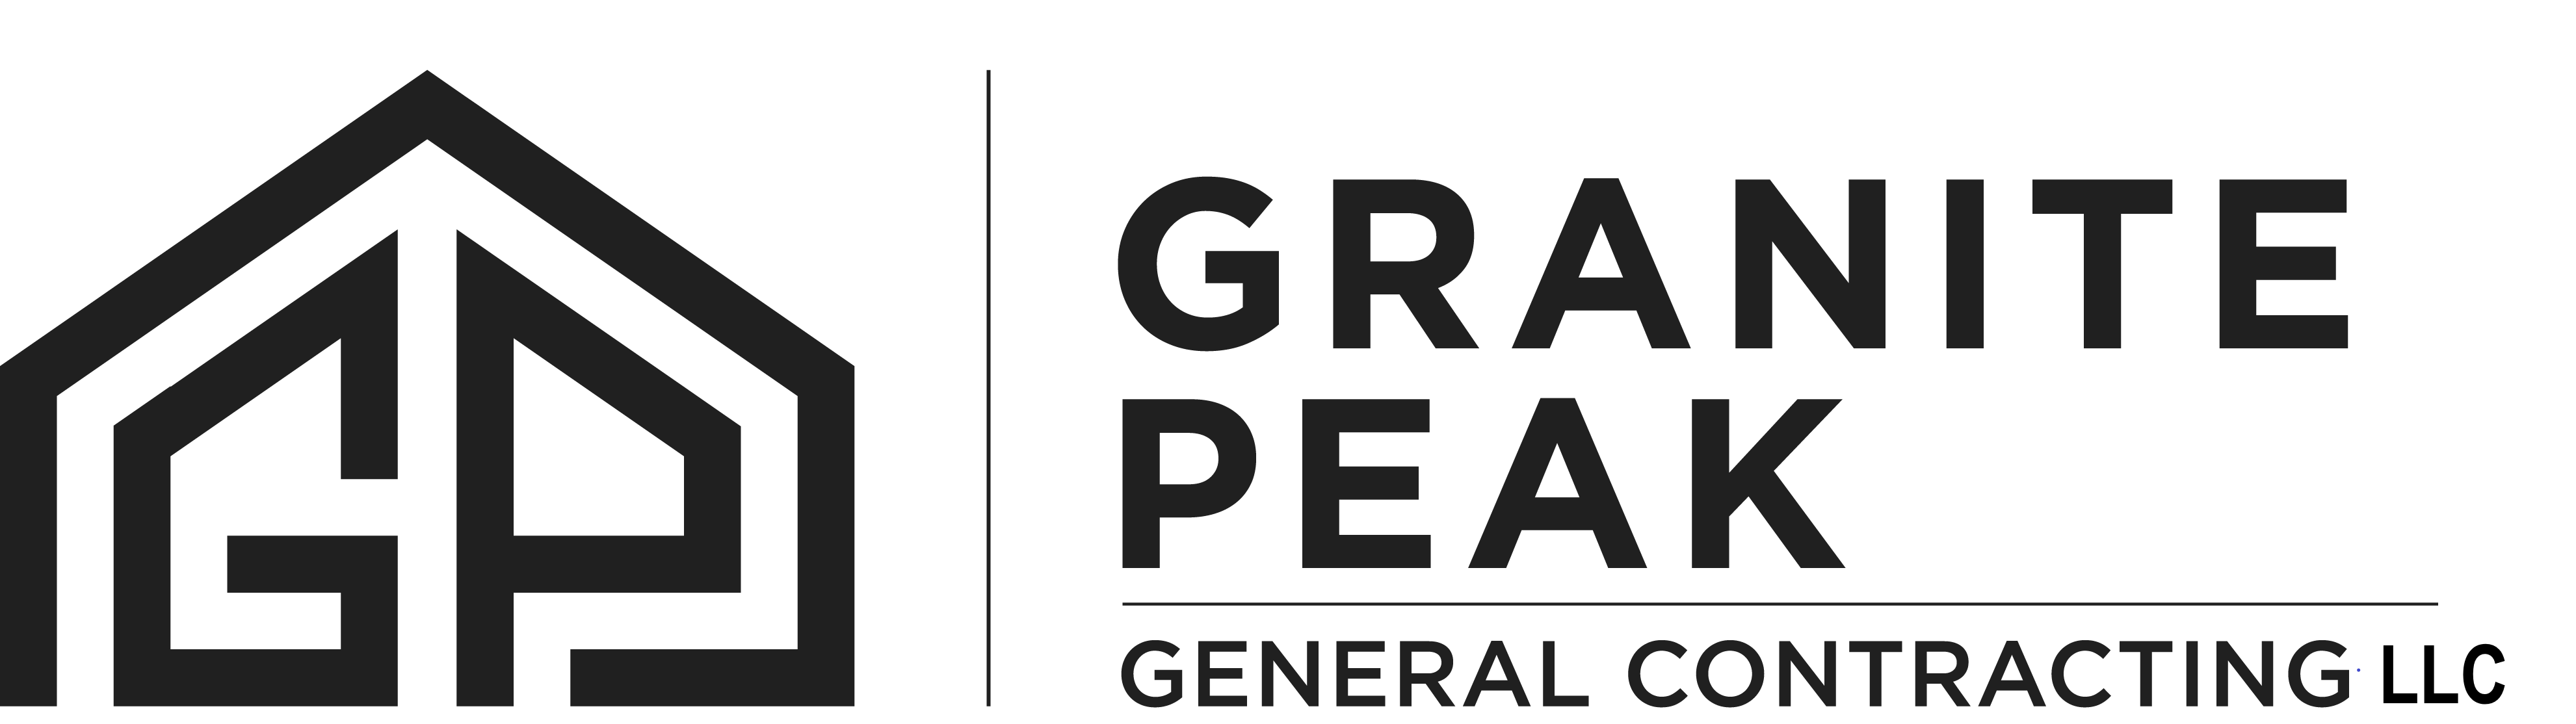 Granite Peak General Contracting Logo